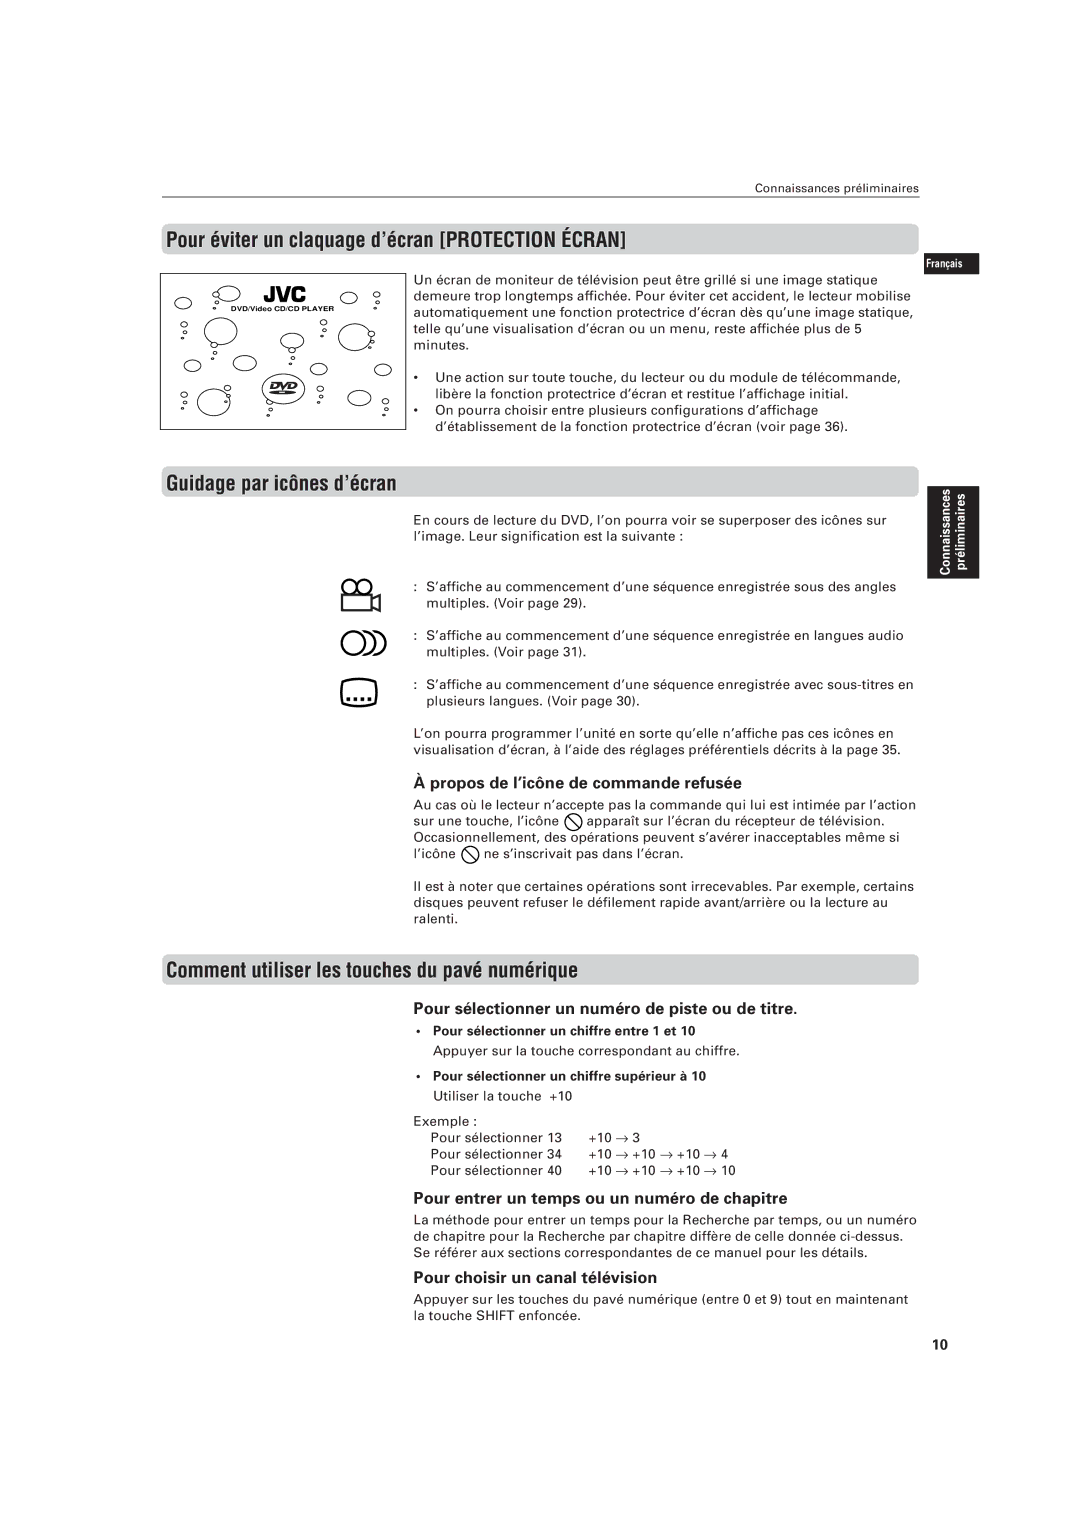 JVC LVT0336-003A manual Pour éviter un claquage d’écran Protection Écran, Guidage par icônes d’écran 